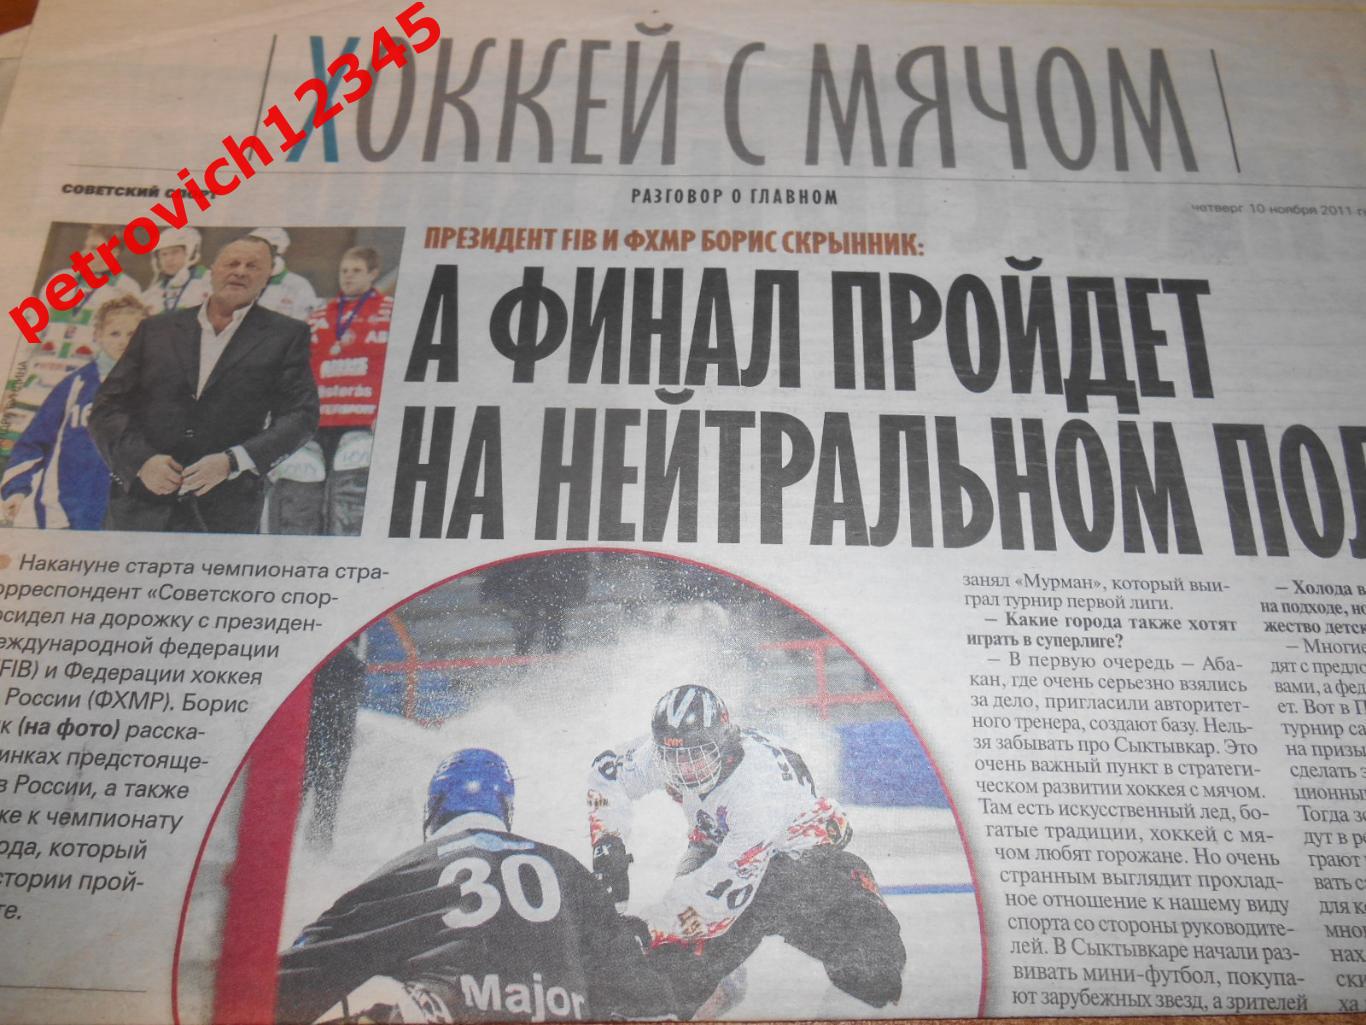 советский спорт хоккей с мячом - 10 ноября 2011г